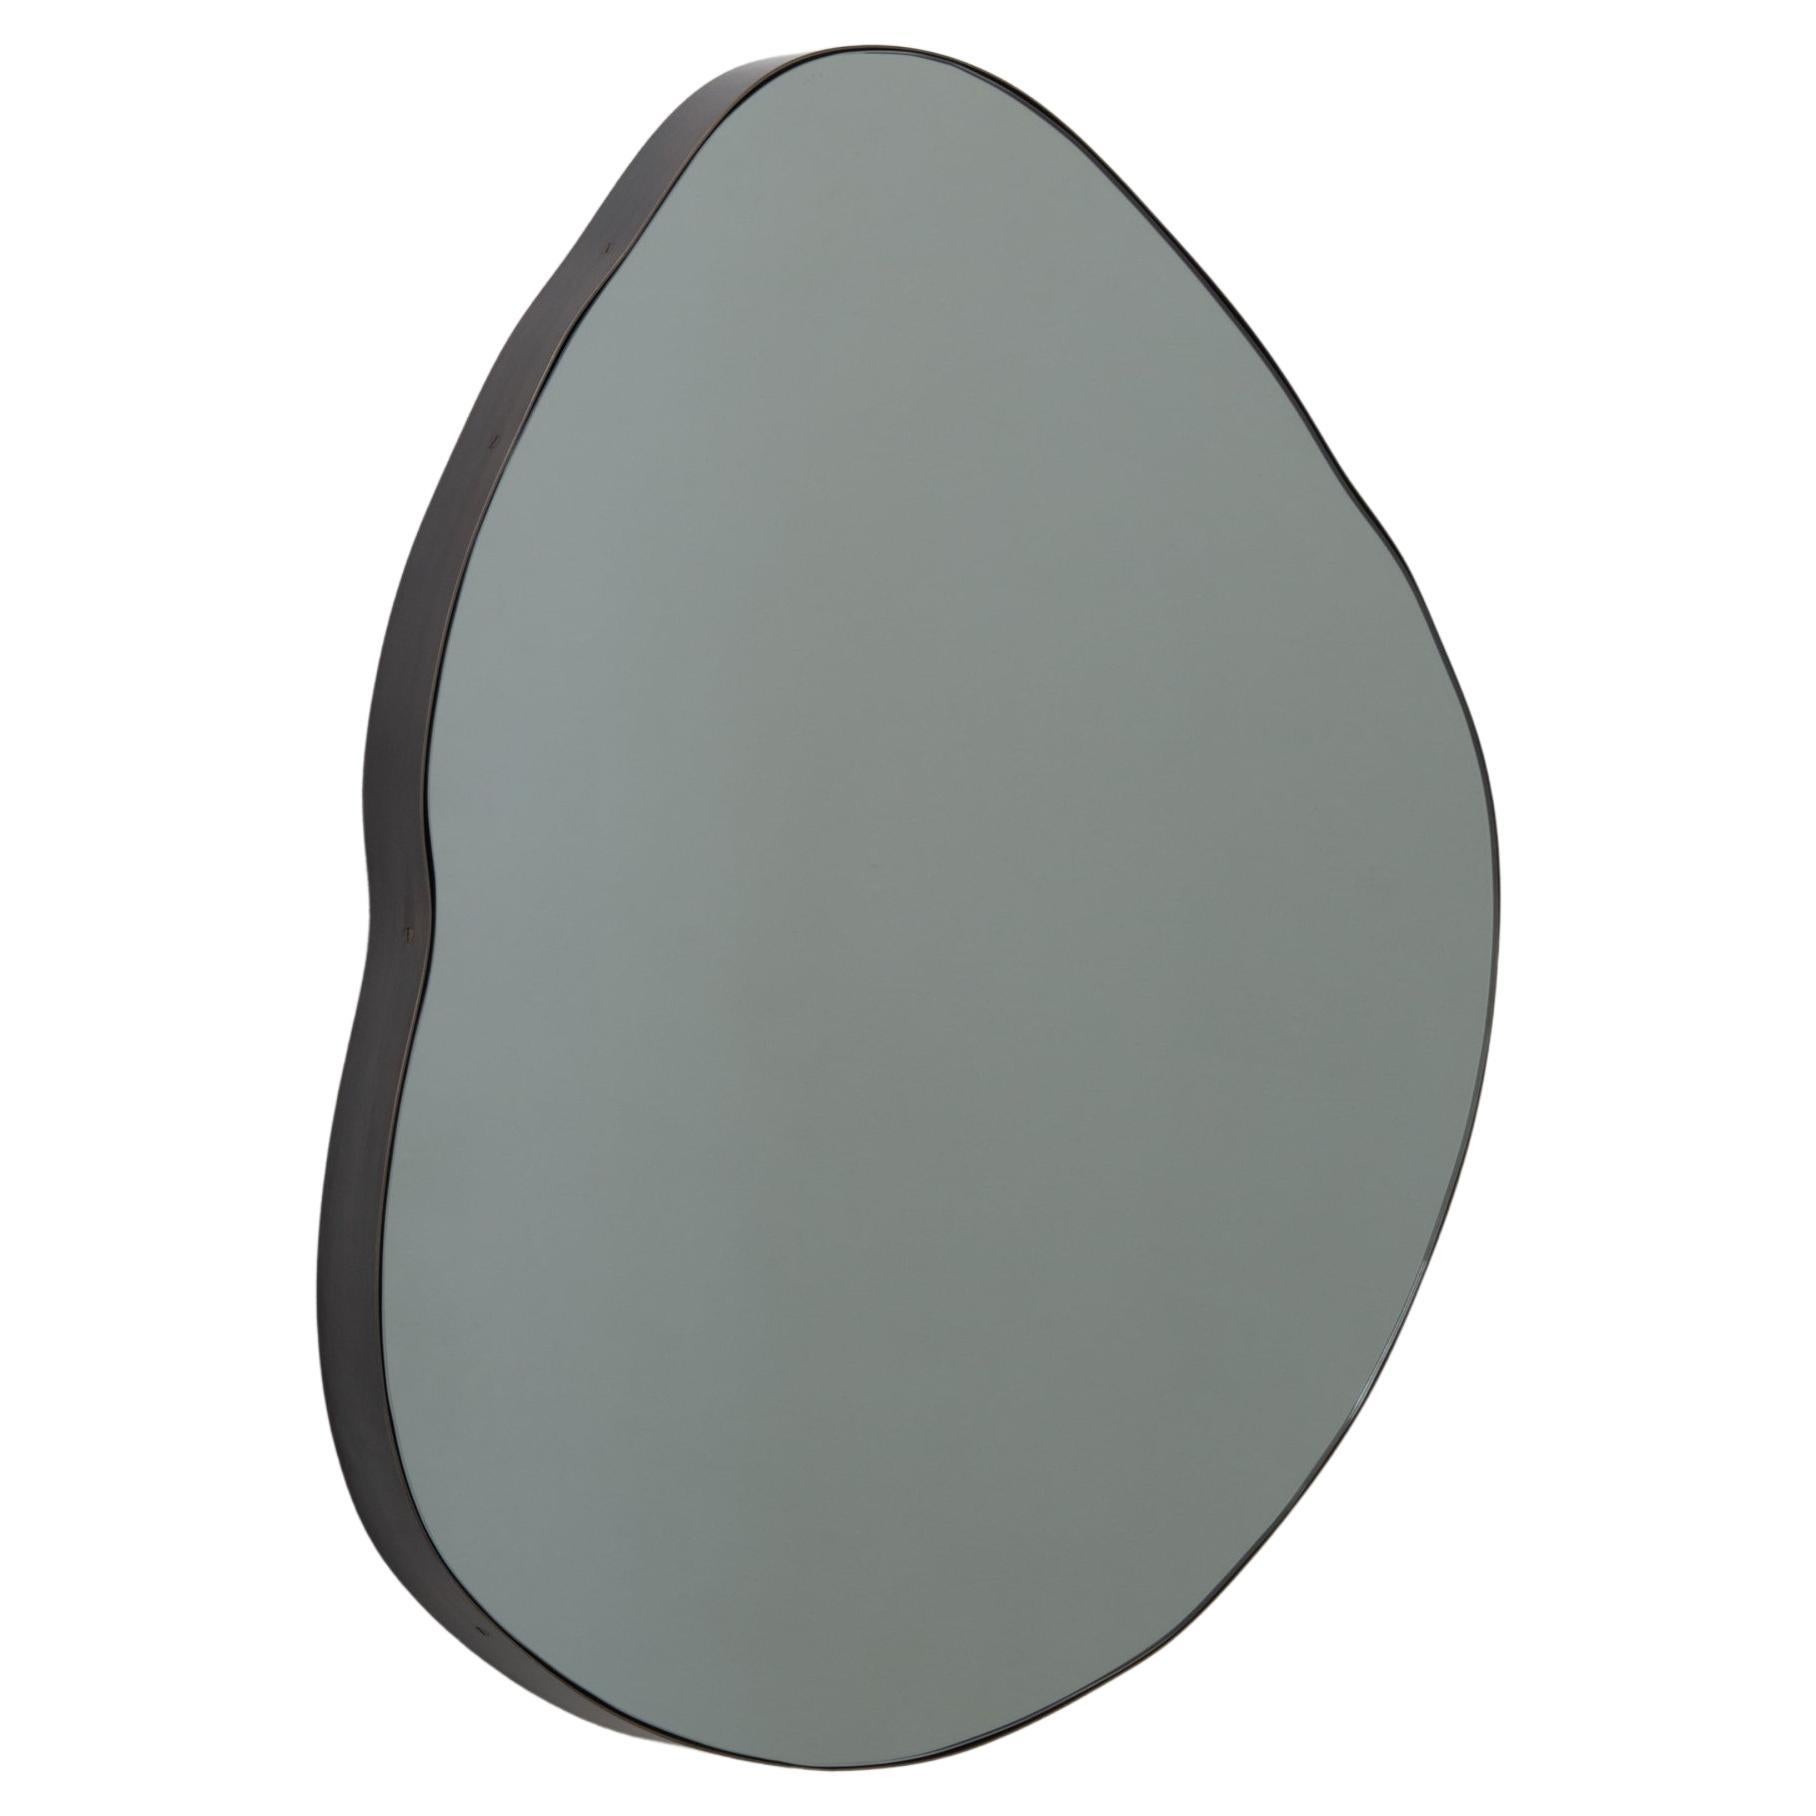 Ergon Organic Freeform beleuchteter schwarzer Spiegel, Bronze Patina Rahmen, groß